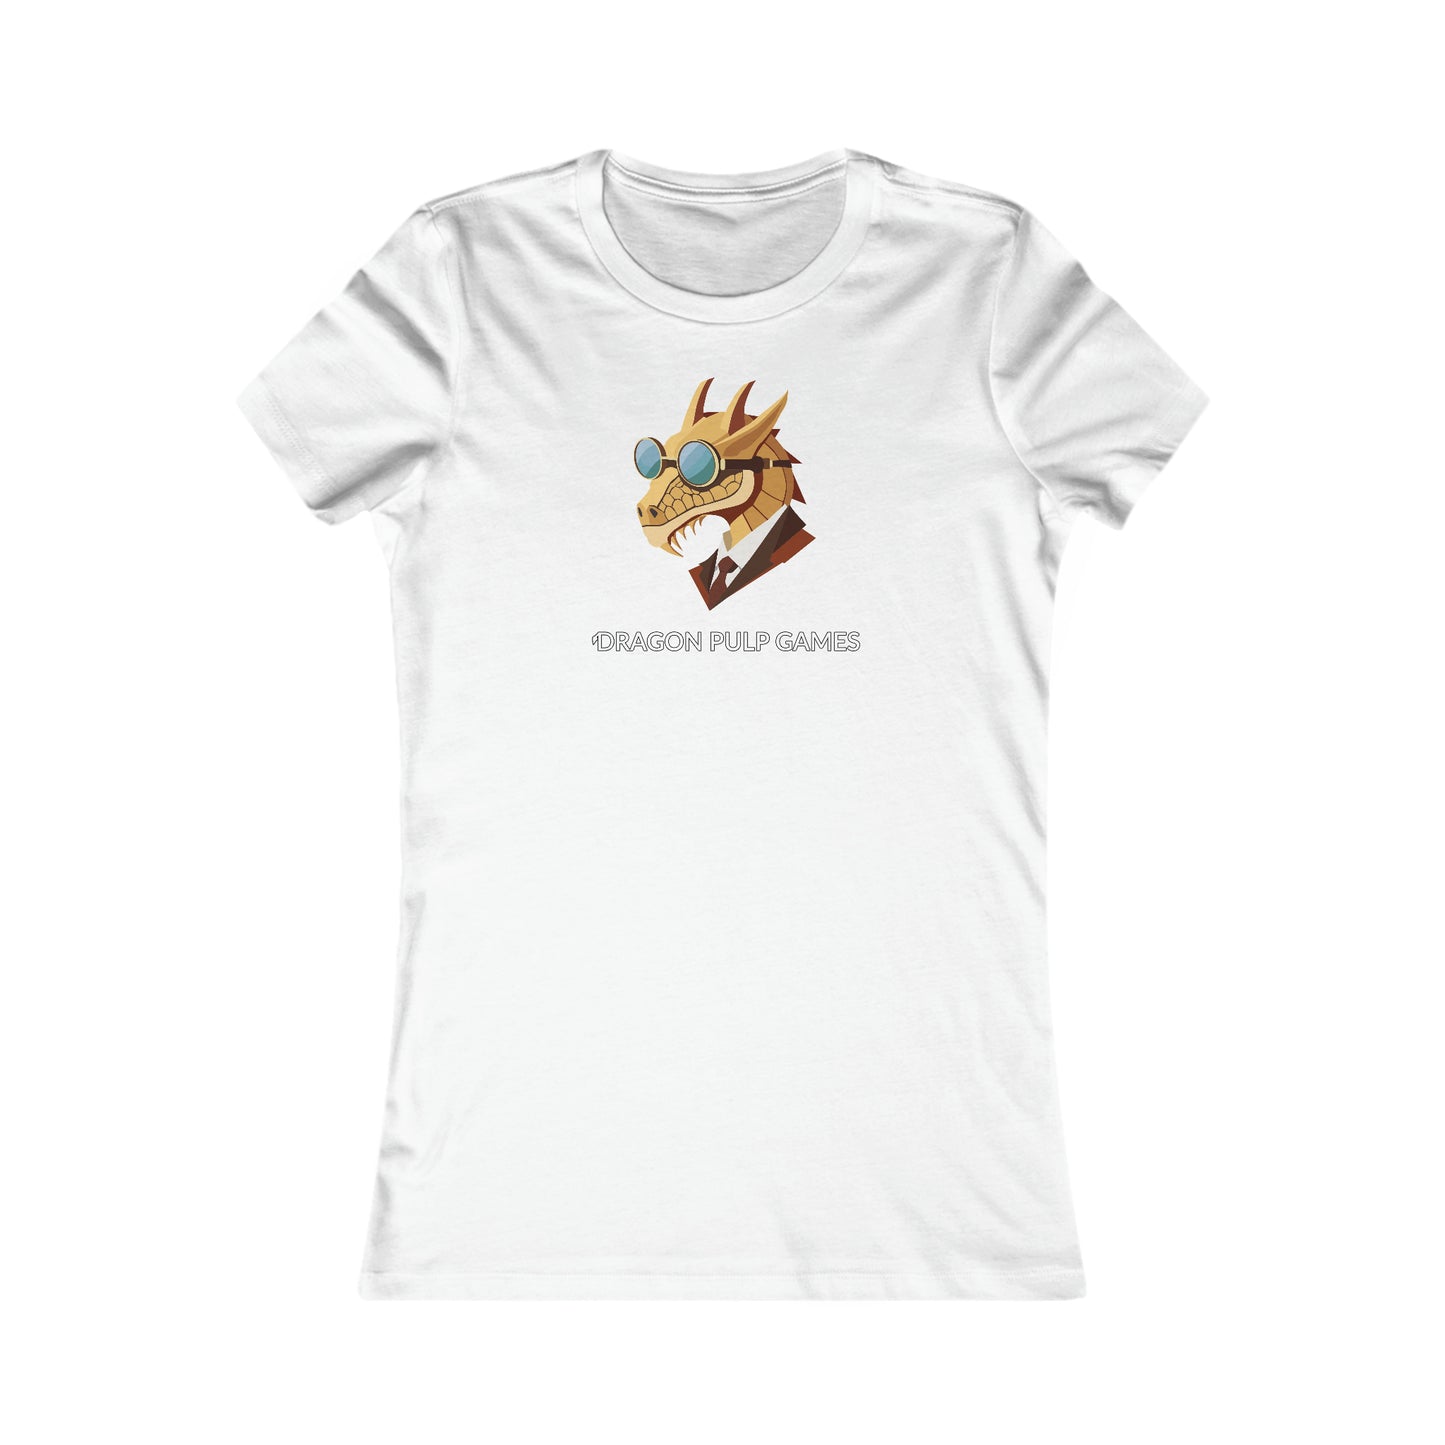 Dragon Pulp Games T-Shirt (Frauen)